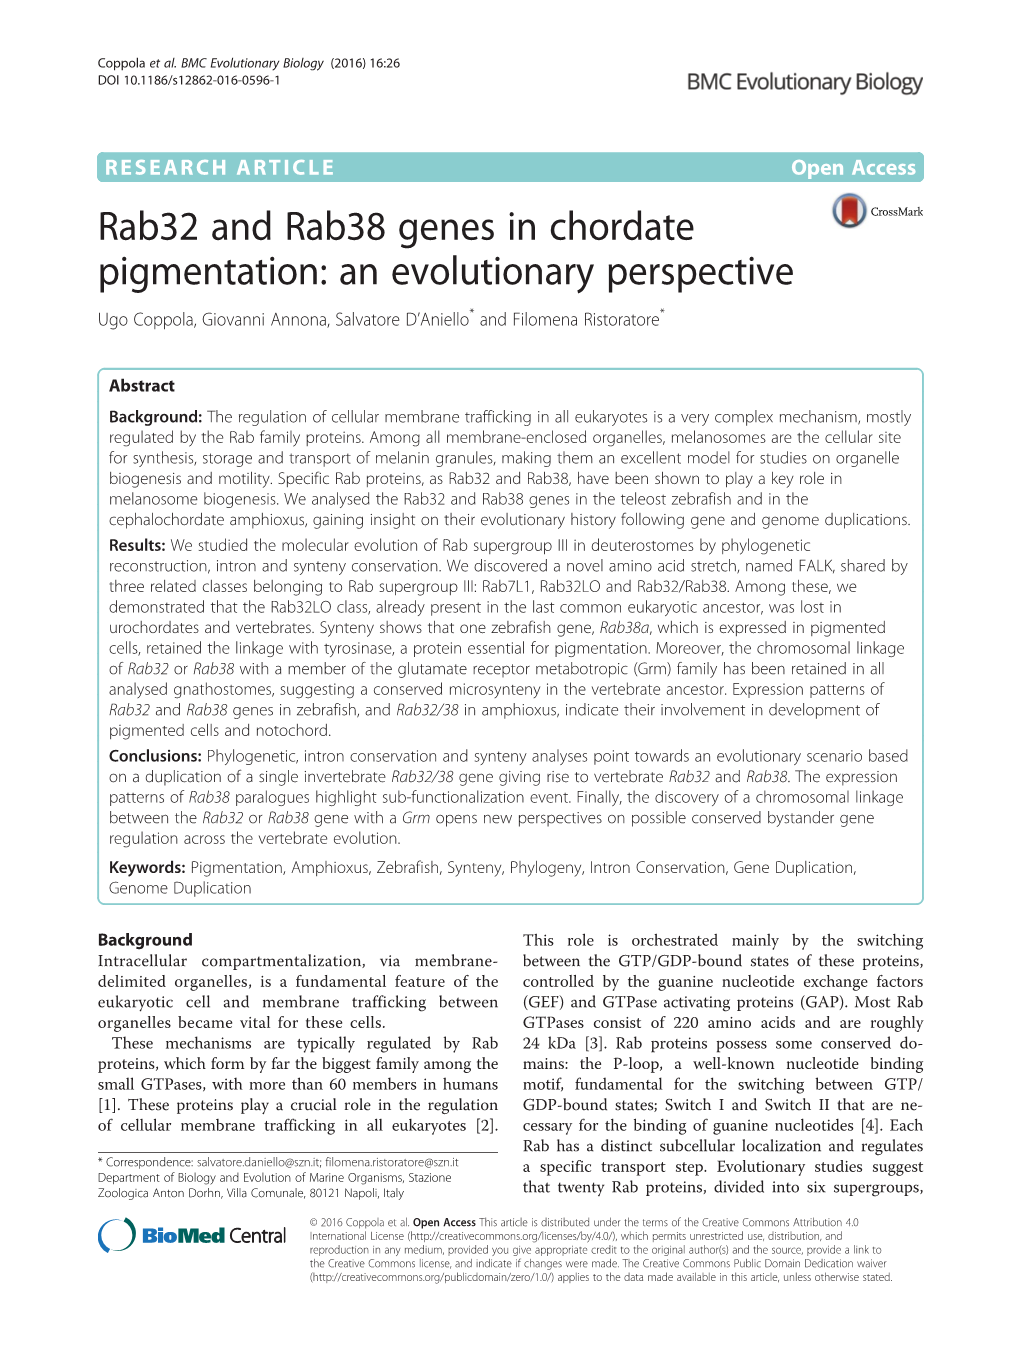 Rab32 and Rab38 Genes in Chordate Pigmentation: an Evolutionary Perspective Ugo Coppola, Giovanni Annona, Salvatore D’Aniello* and Filomena Ristoratore*